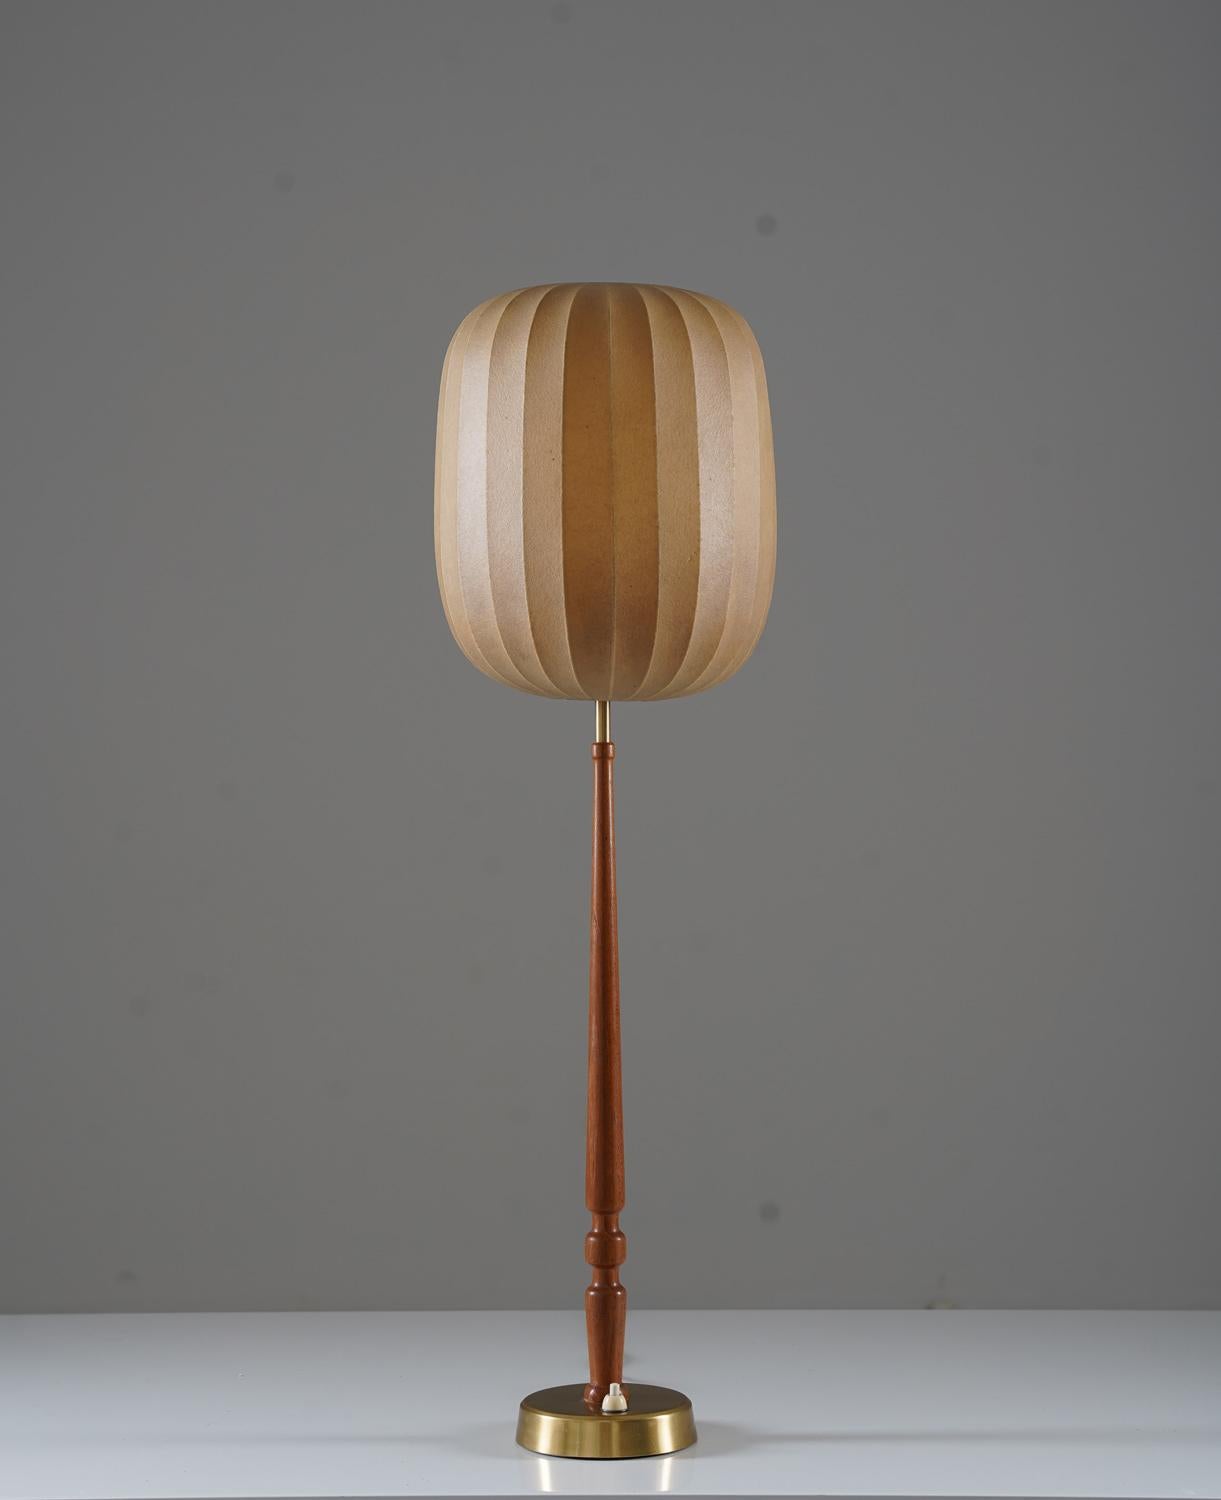 Seltenes Tischlampenmodell von Hans Bergström Modell 743 von Ateljé Lyktan, Åhus.
Die Leuchte besteht aus einer Stange aus Messing und Teakholz, die einen Schirm aus Sprühplastik trägt, der ein wunderschönes, weiches Licht spendet, wenn er